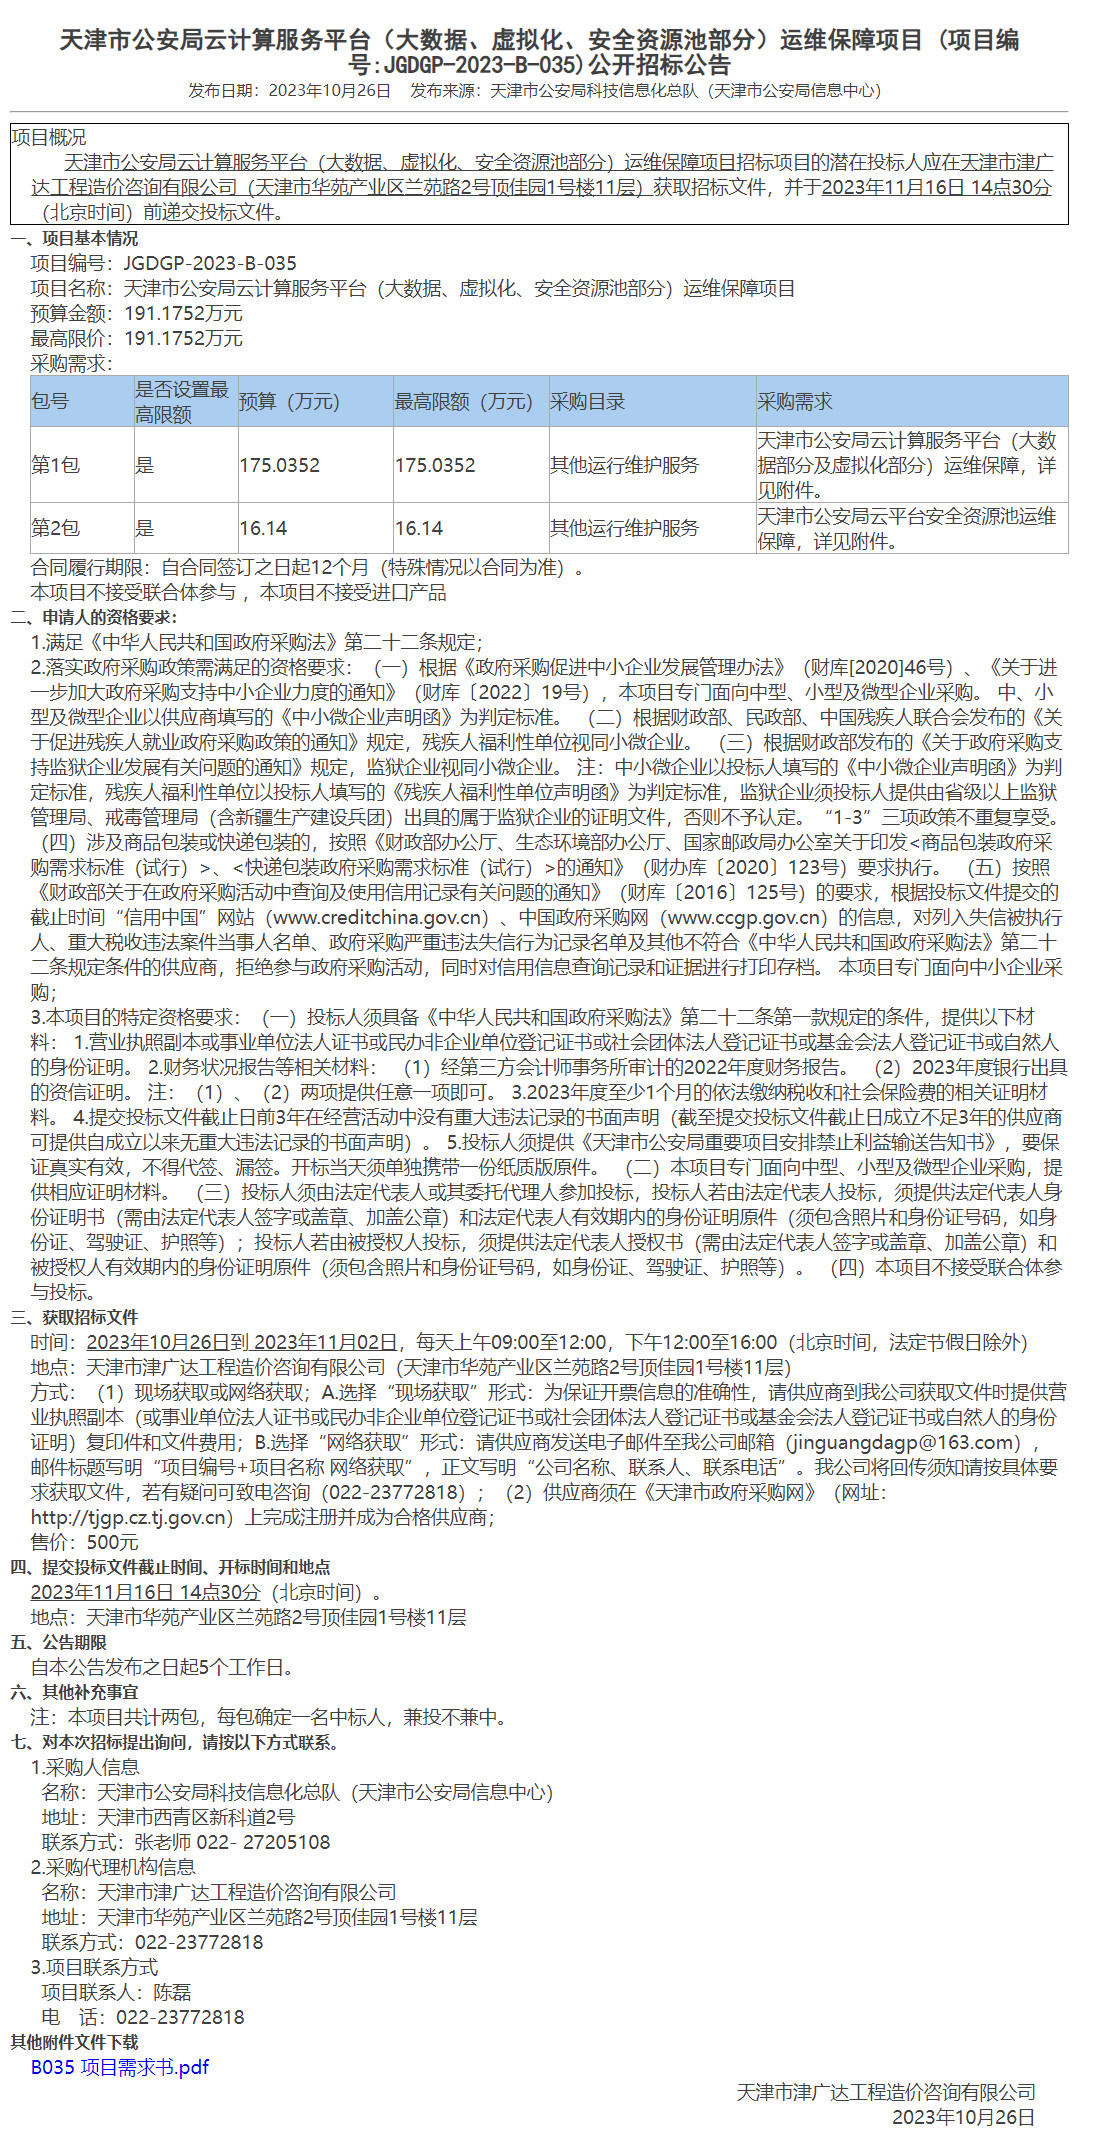 天津市公安局云计算服务平台（大数据、虚拟化、安全资源池部分）运维保障项目(图1)